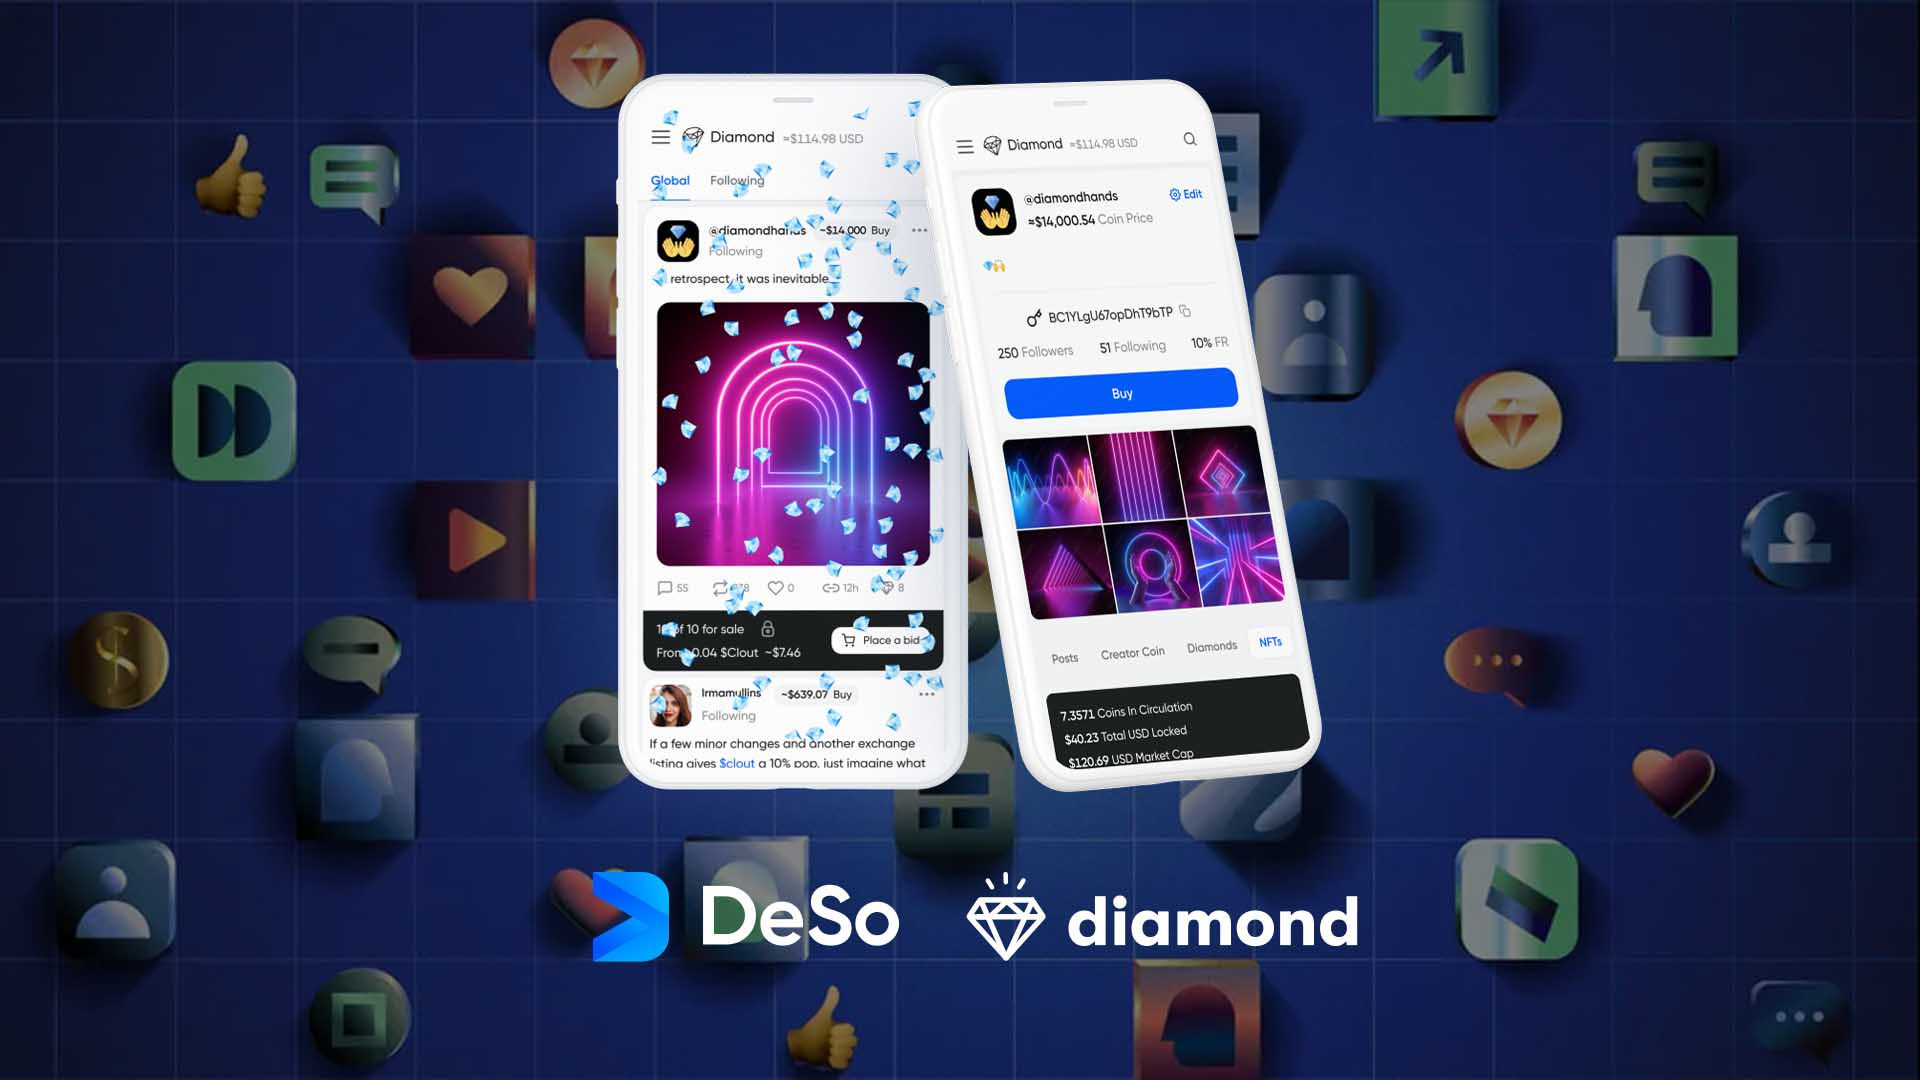 Diamond Social Media in DeSo Blockchain